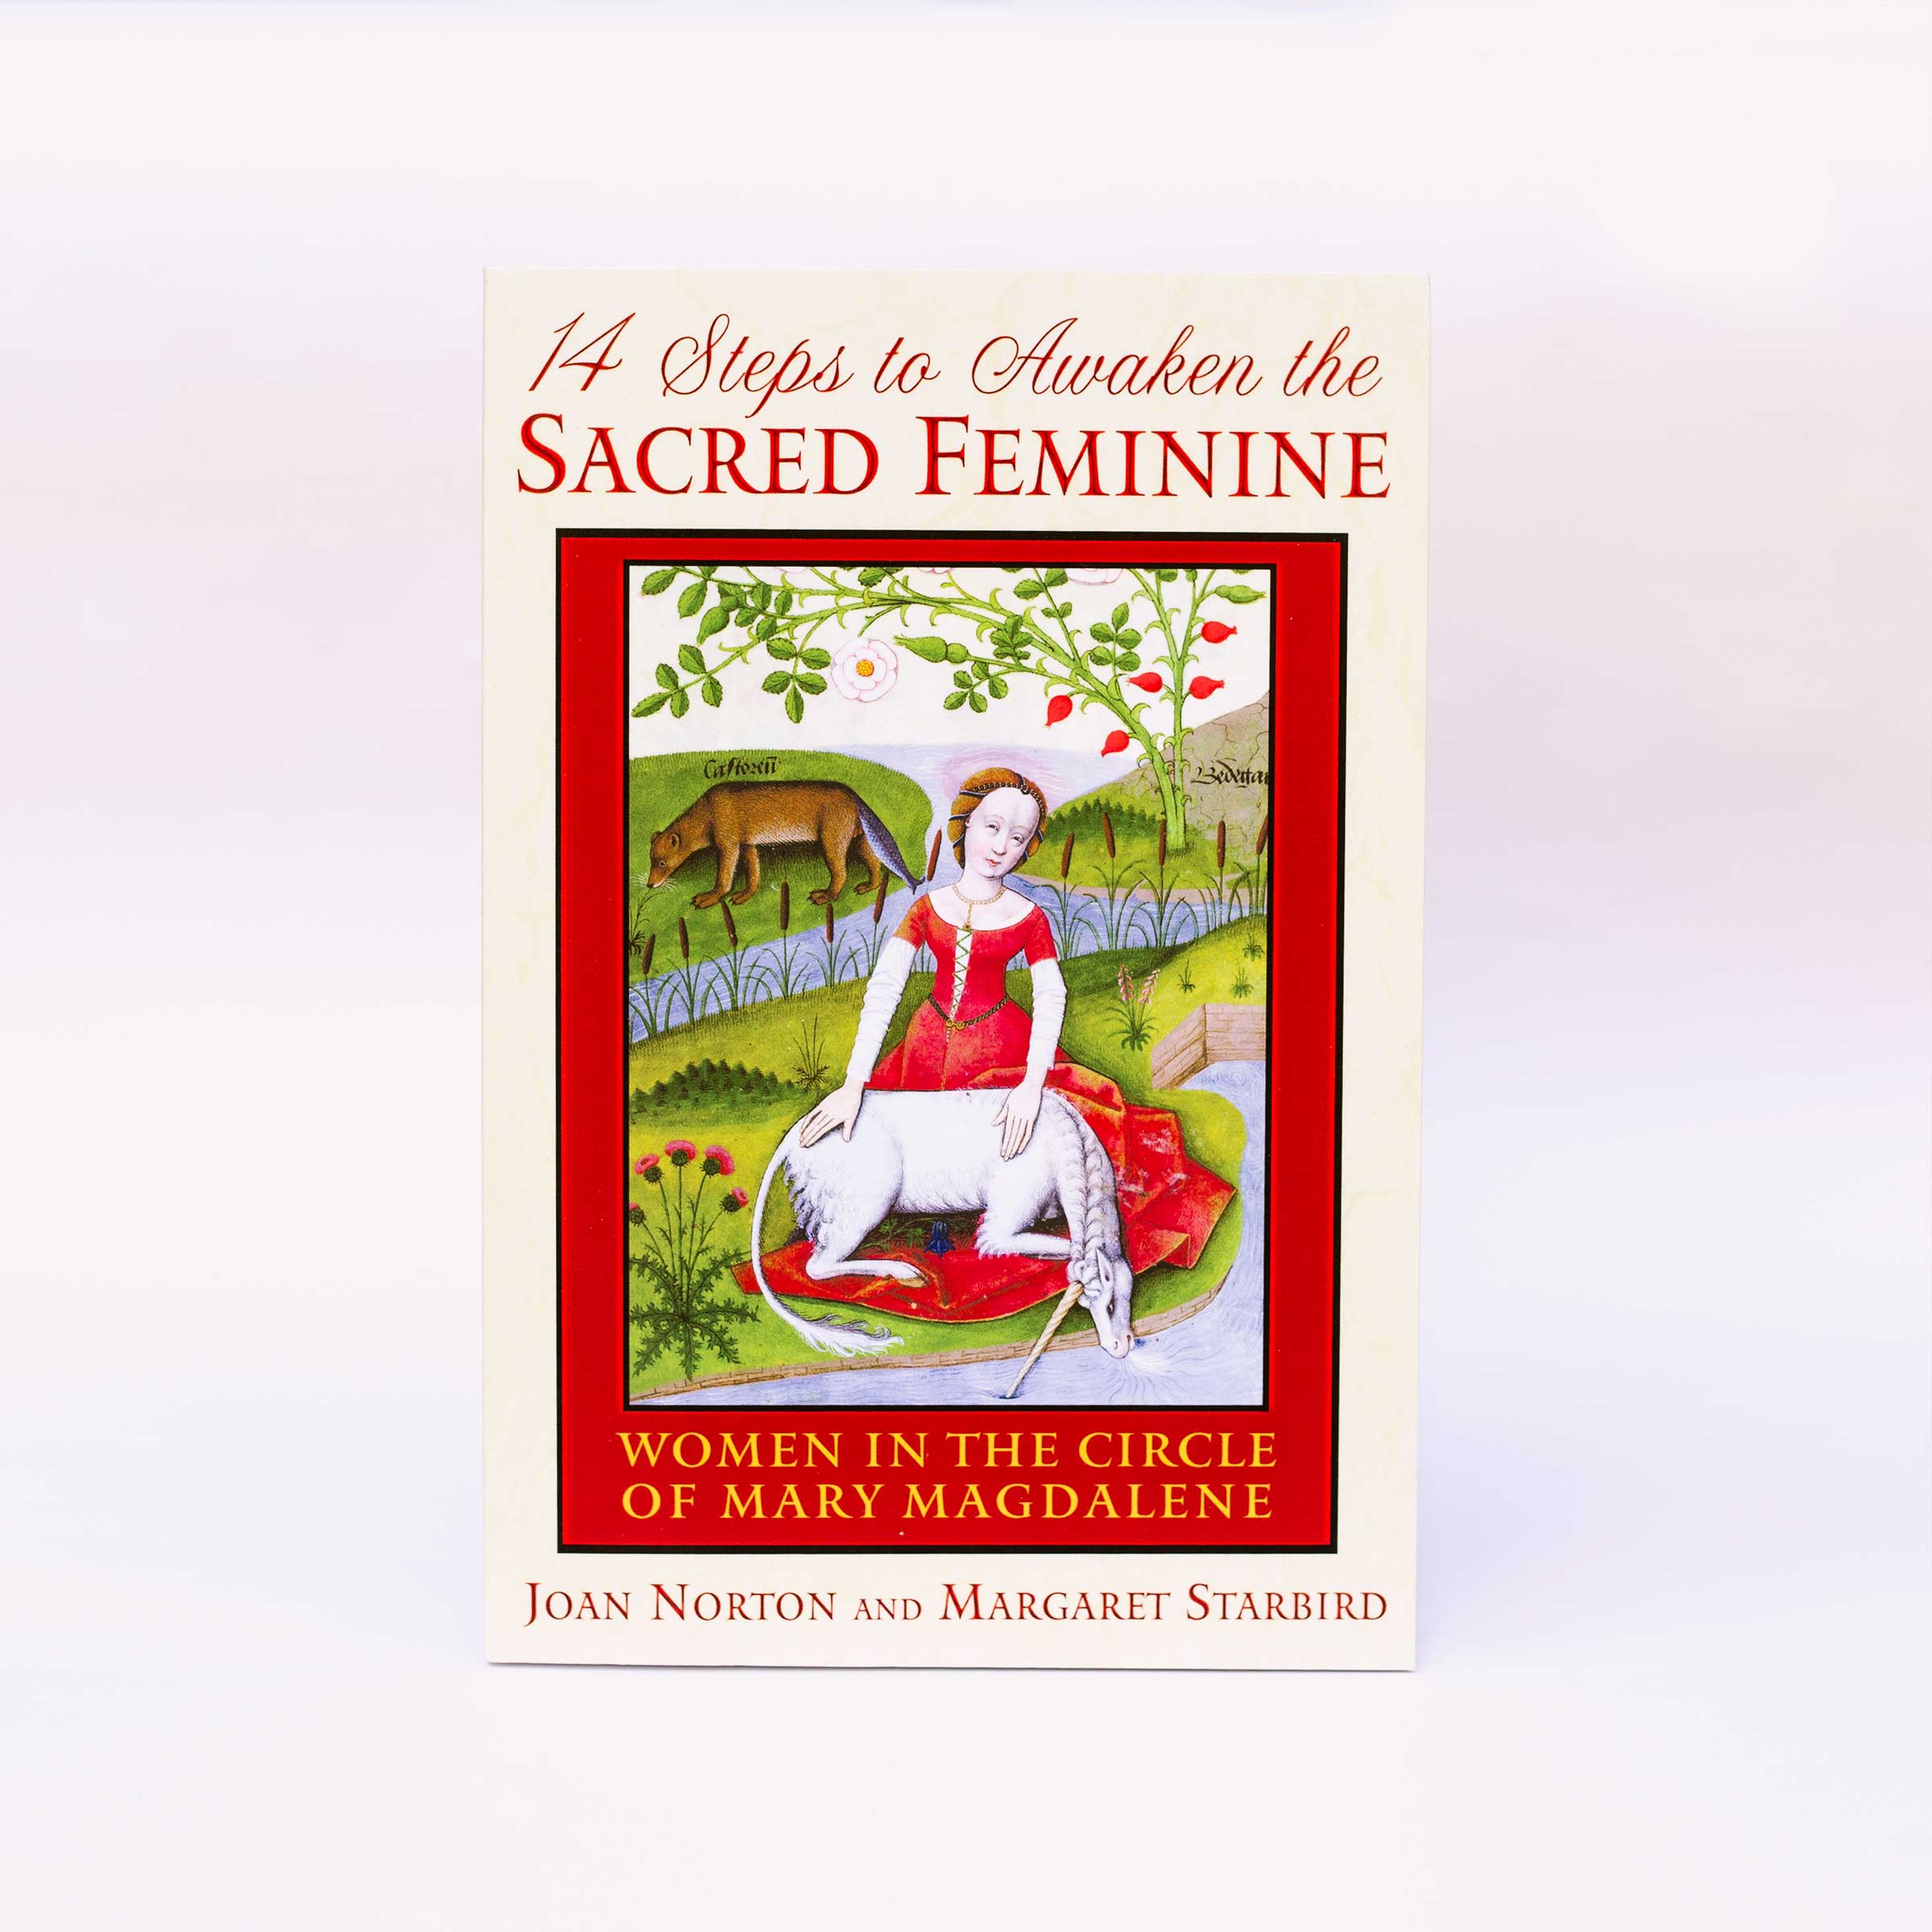 14 Steps to Awaken the Sacred Feminine